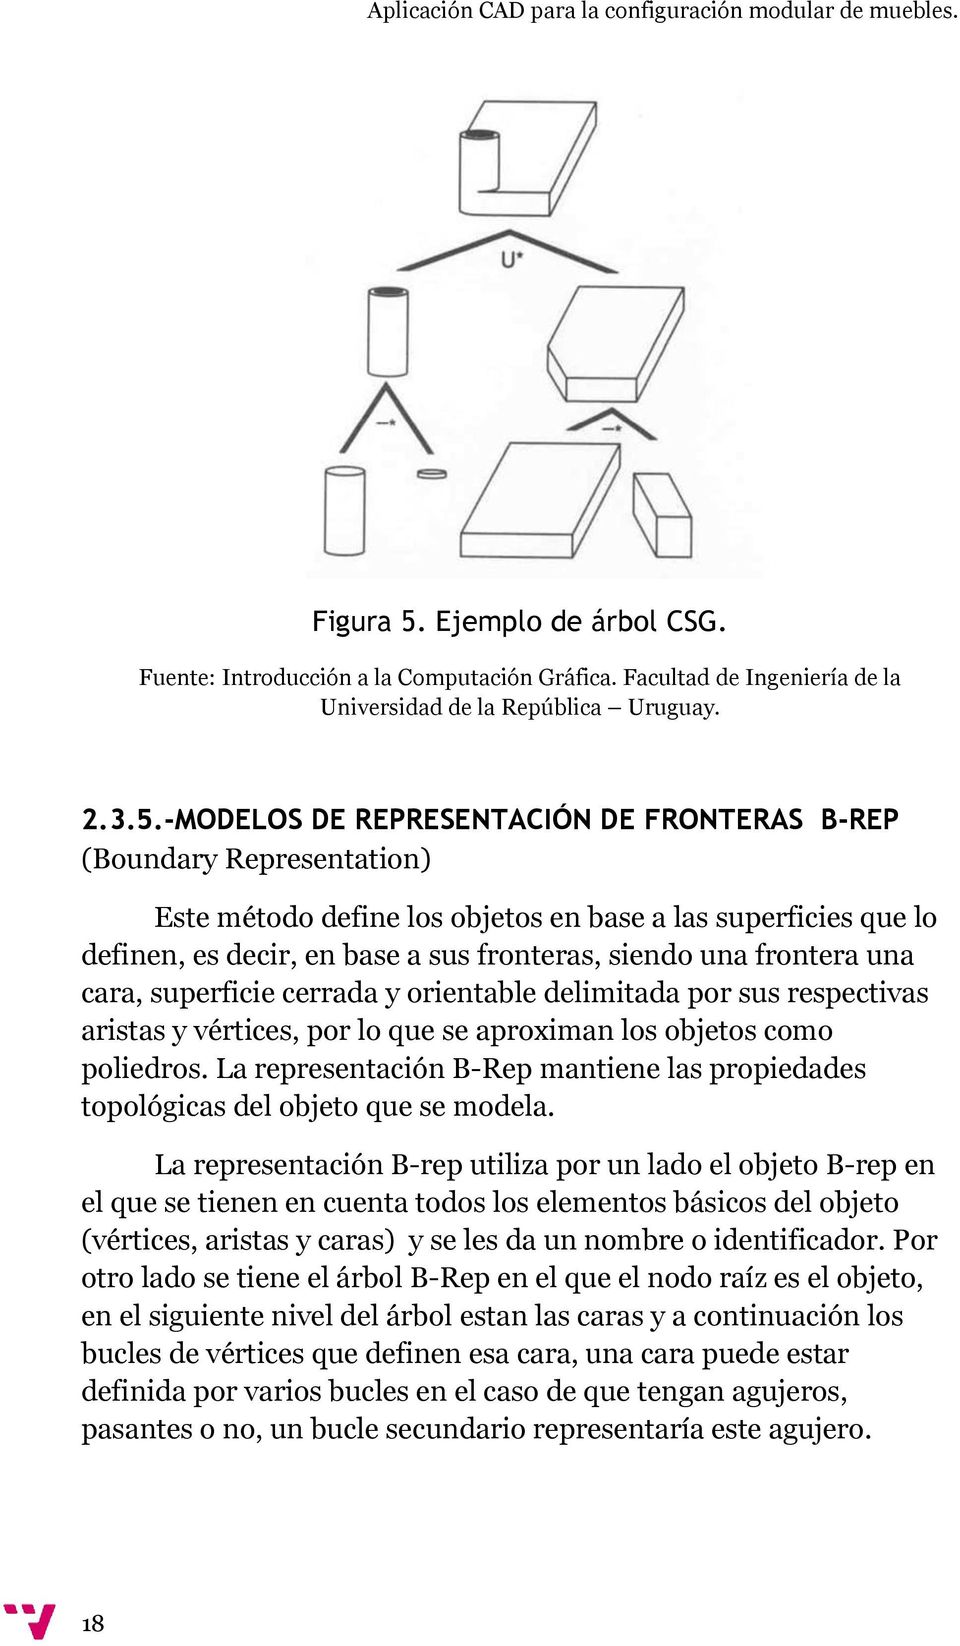 -MODELOS DE REPRESENTACIÓN DE FRONTERAS B-REP (Boundary Representation) Este método define los objetos en base a las superficies que lo definen, es decir, en base a sus fronteras, siendo una frontera